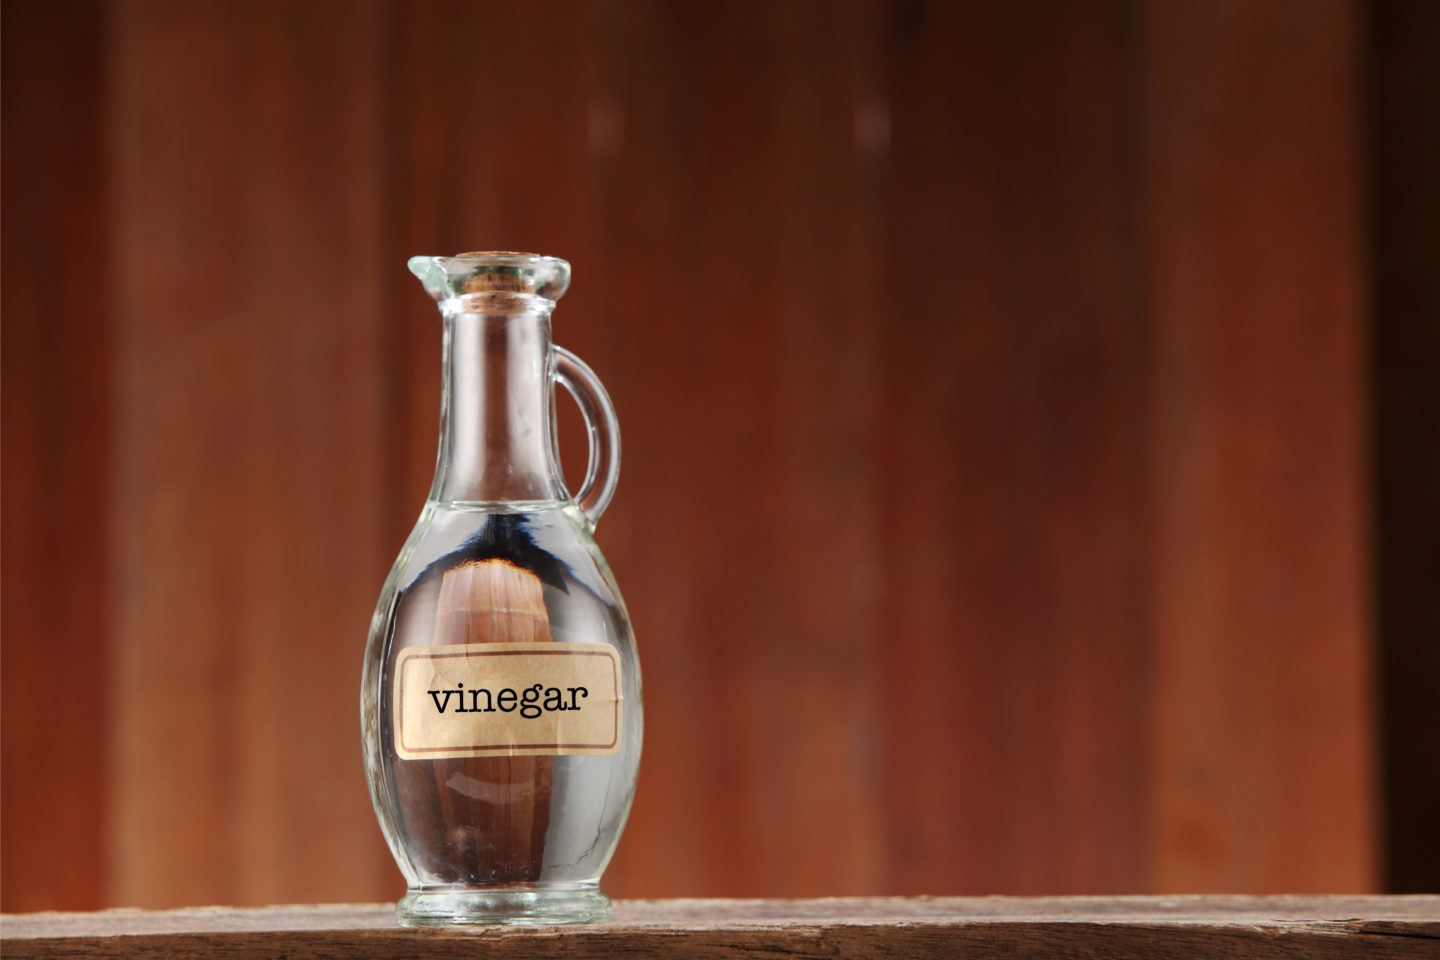 distilled vinegar in small jar